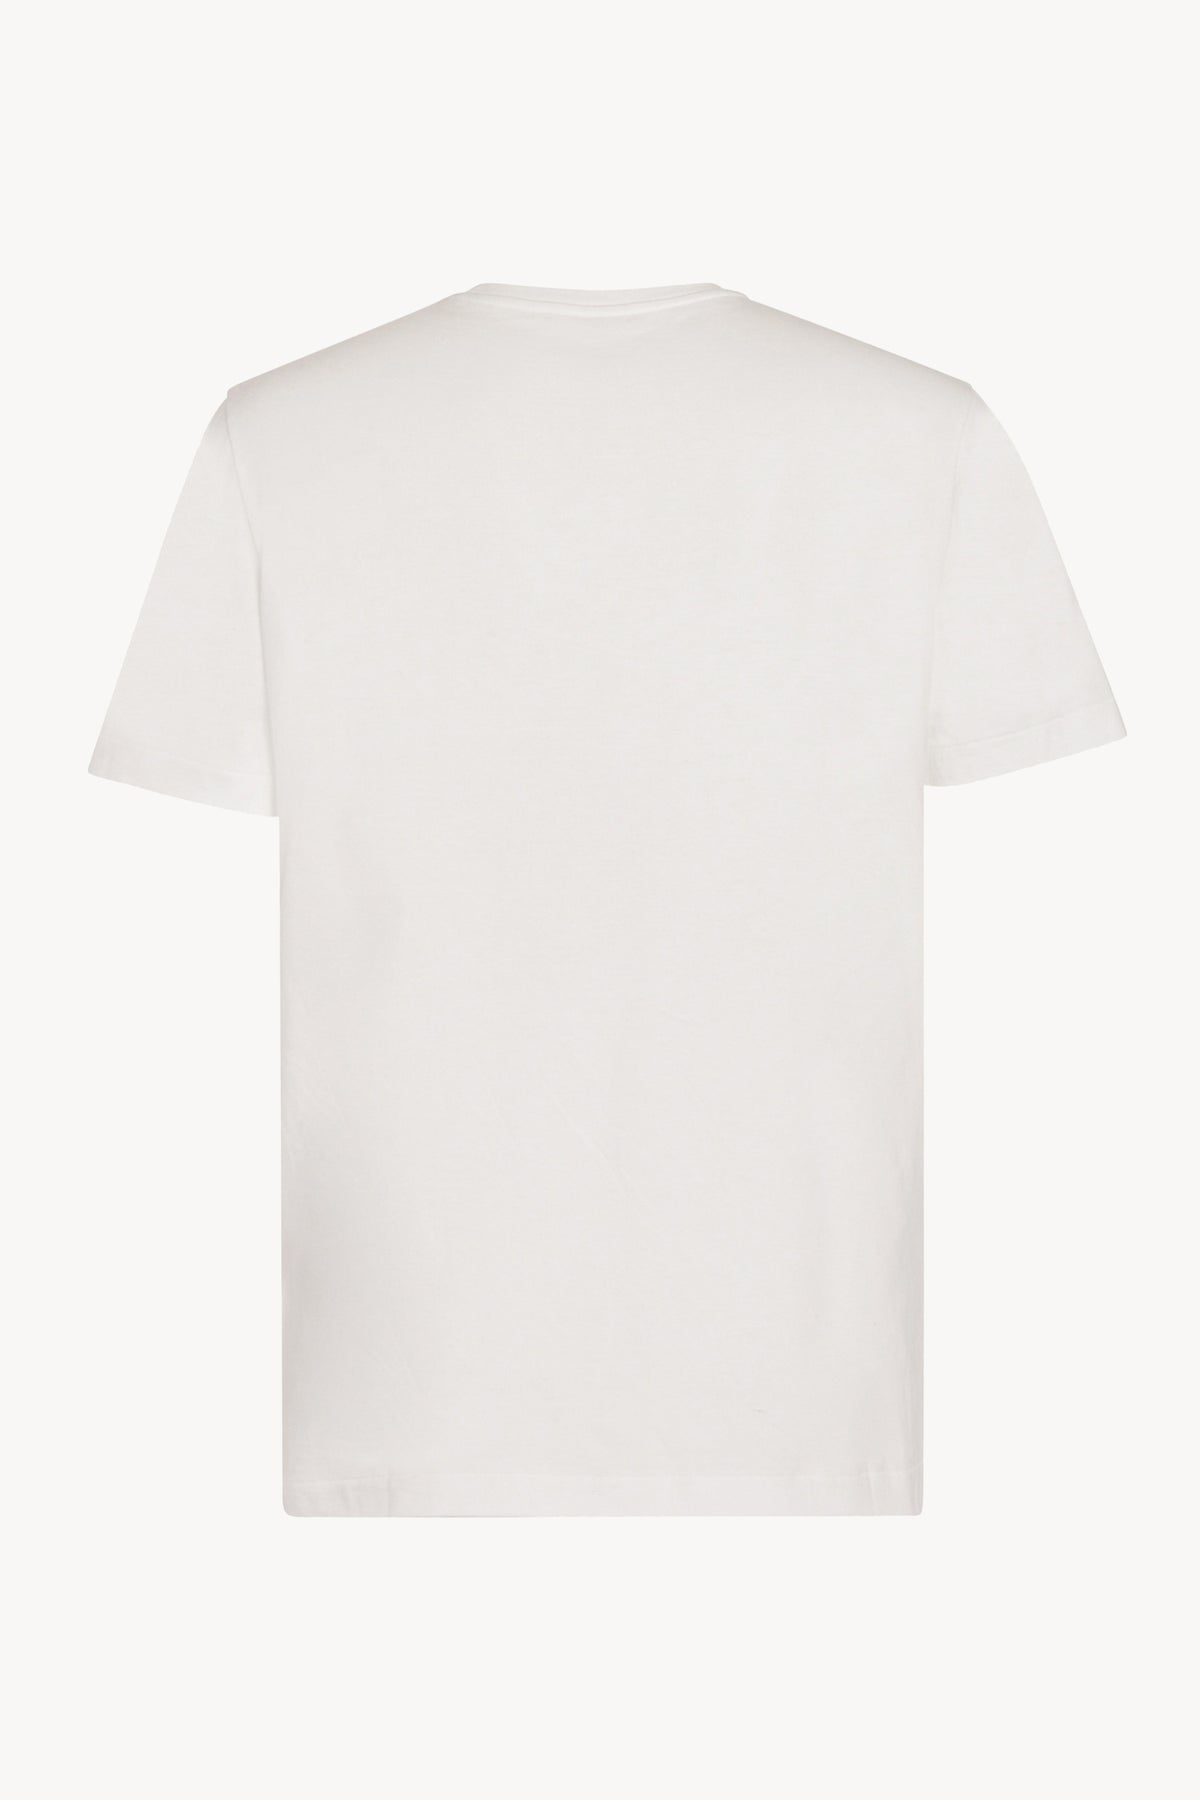 The row LUKE T-SHIRT Tシャツ 白 ユニセックス対応 ②サイズL